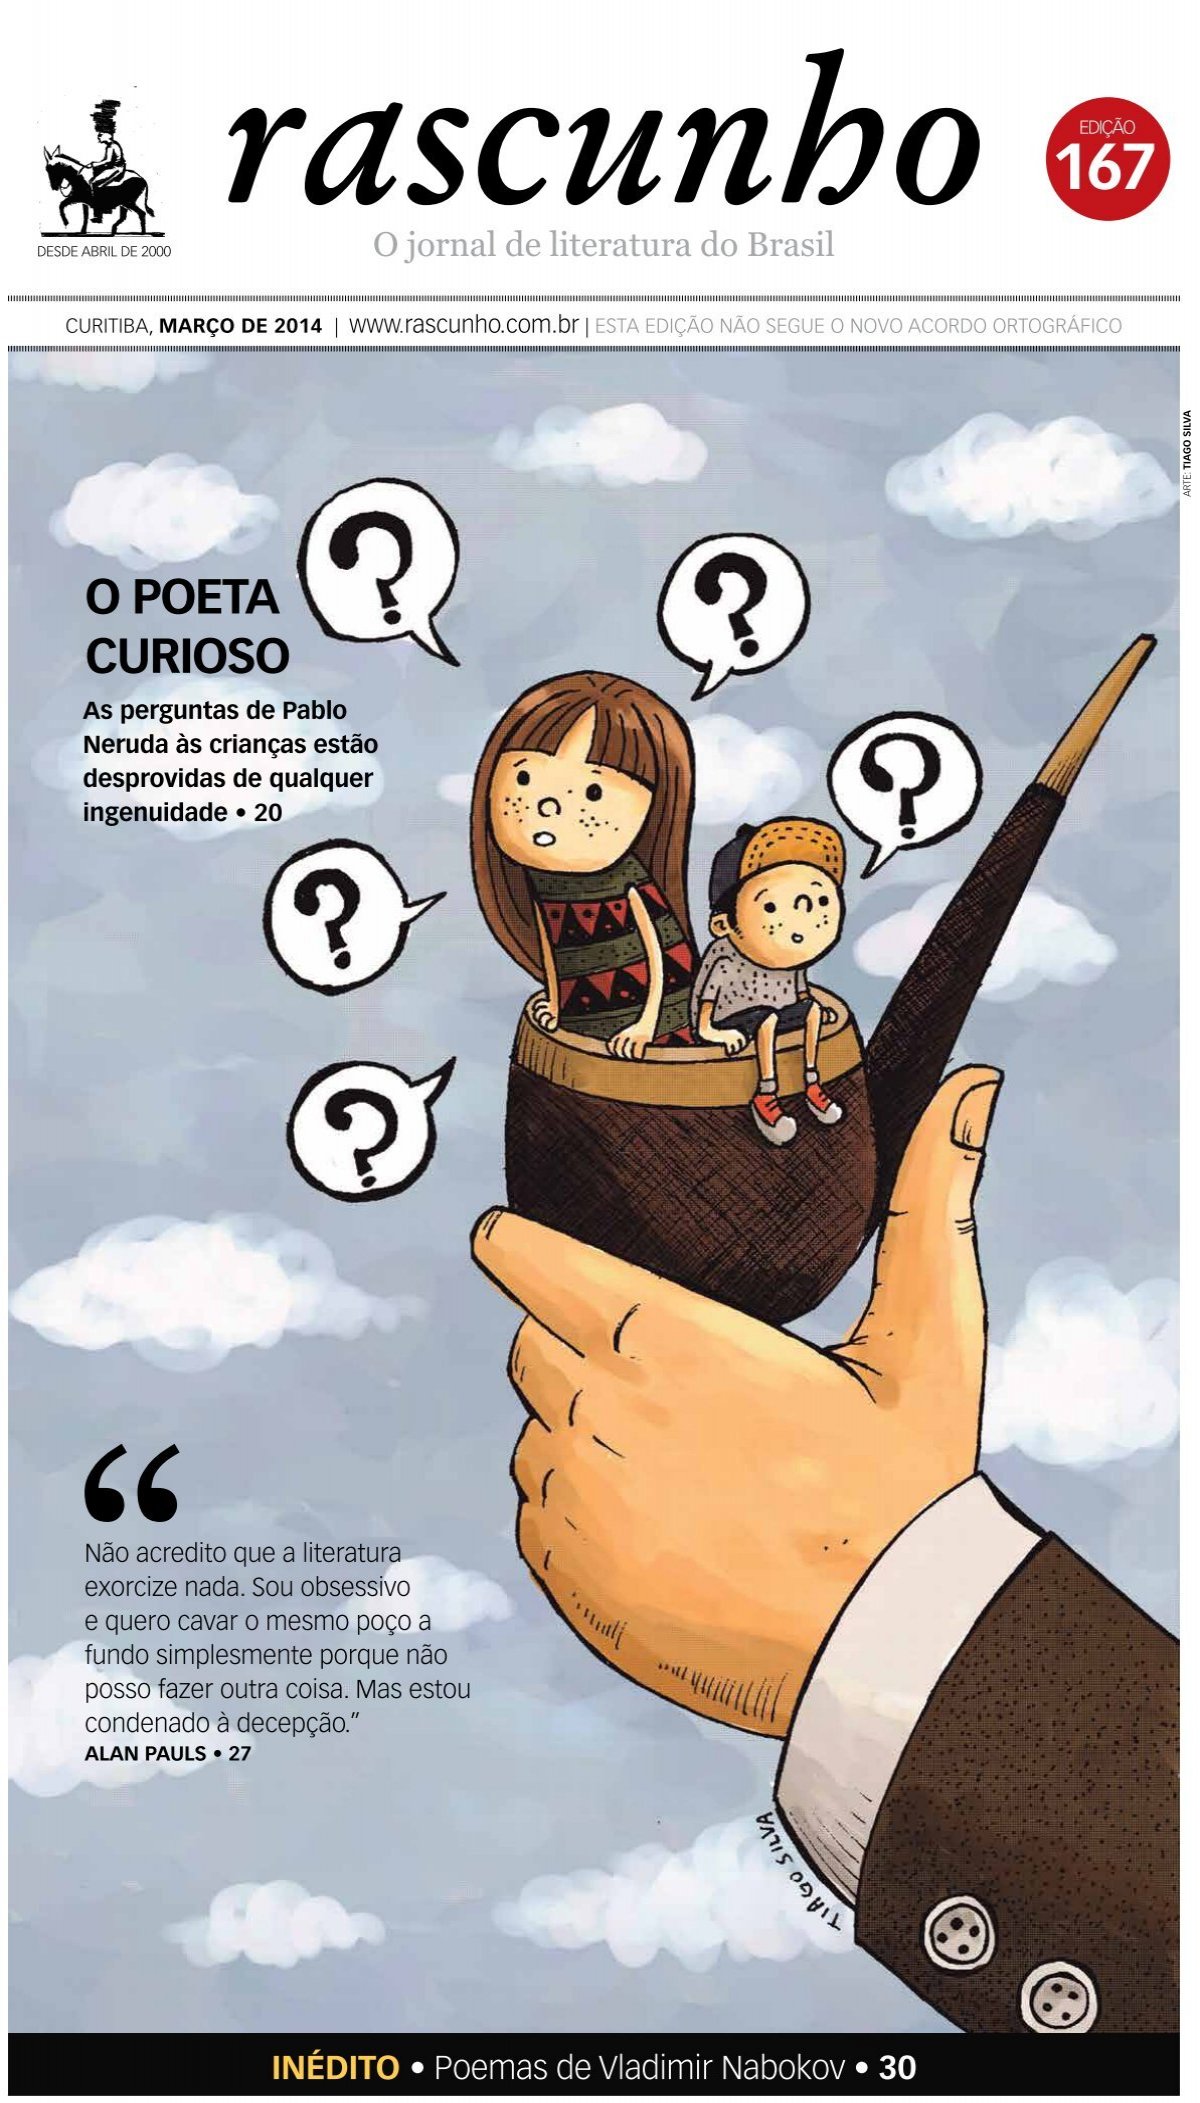 The Last Of Us e o dilema do trem, by Caio Vinicius